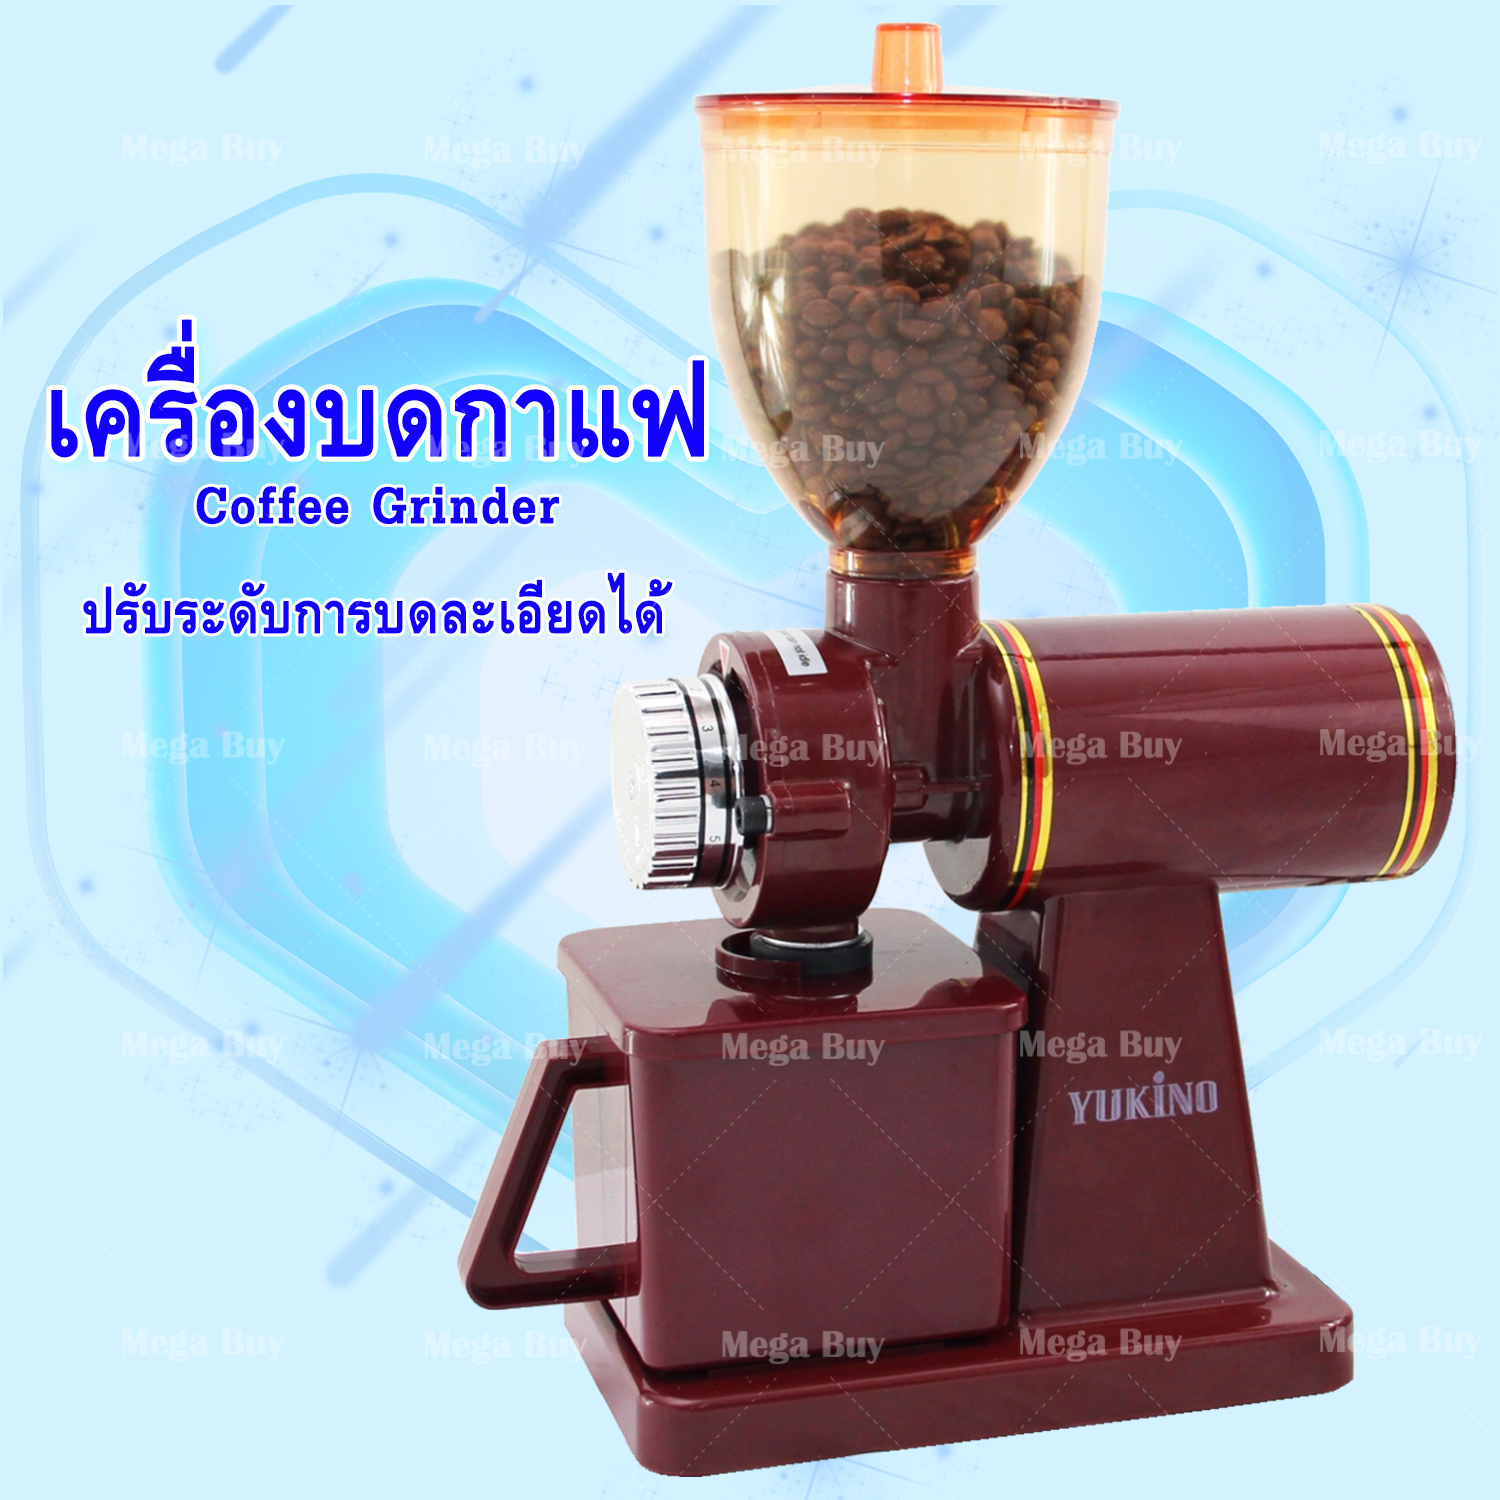 เครื่องบดกาแฟ เครื่องบดเมล็ดกาแฟ เครื่องทำกาแฟ Coffee Grinder เครื่องเตรียมเมล็ดกาแฟ อเนกประสงค์